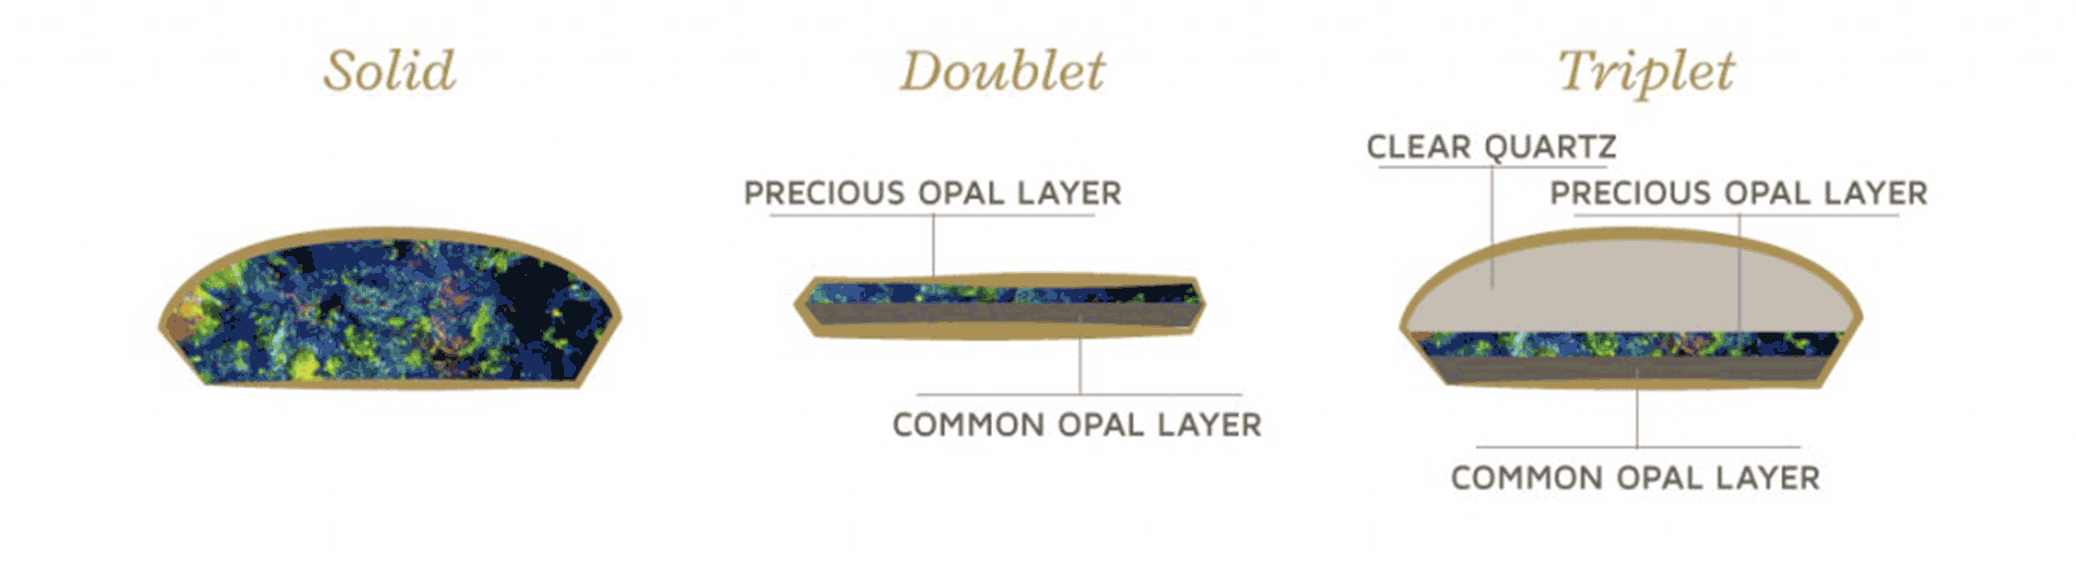 opal layers chart